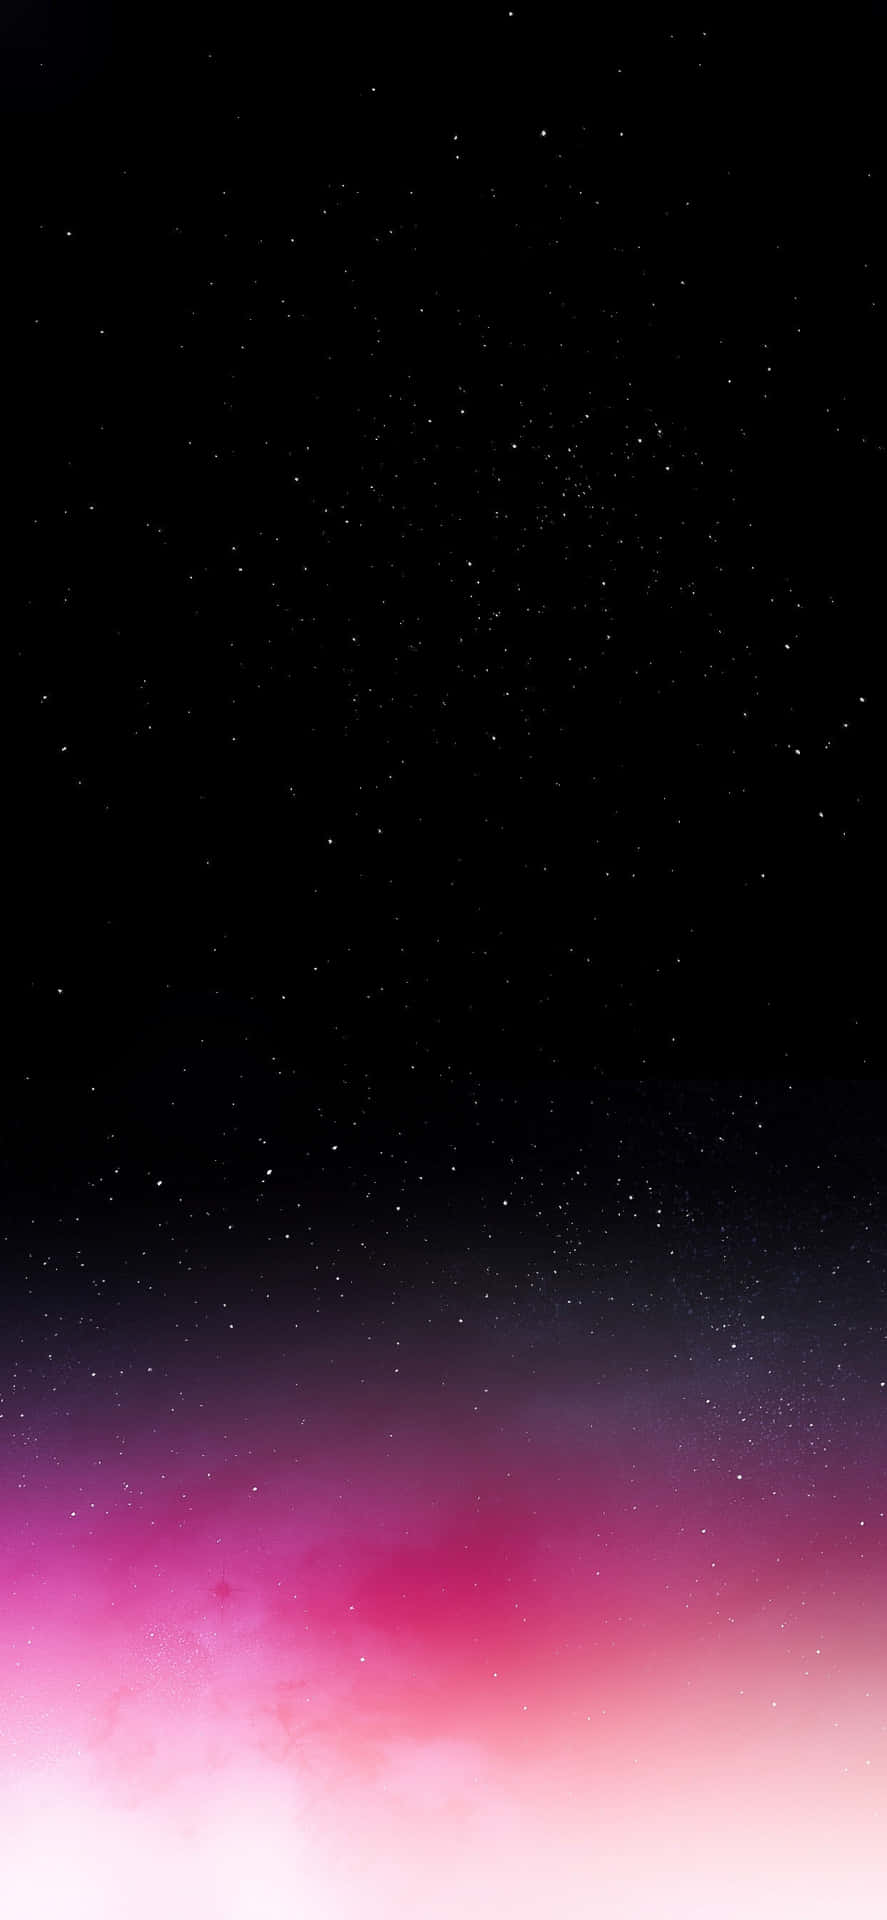 Schwarzerund Pinker Farbverlauf Auf Hintergrund Mit Sternen Im Weltraum